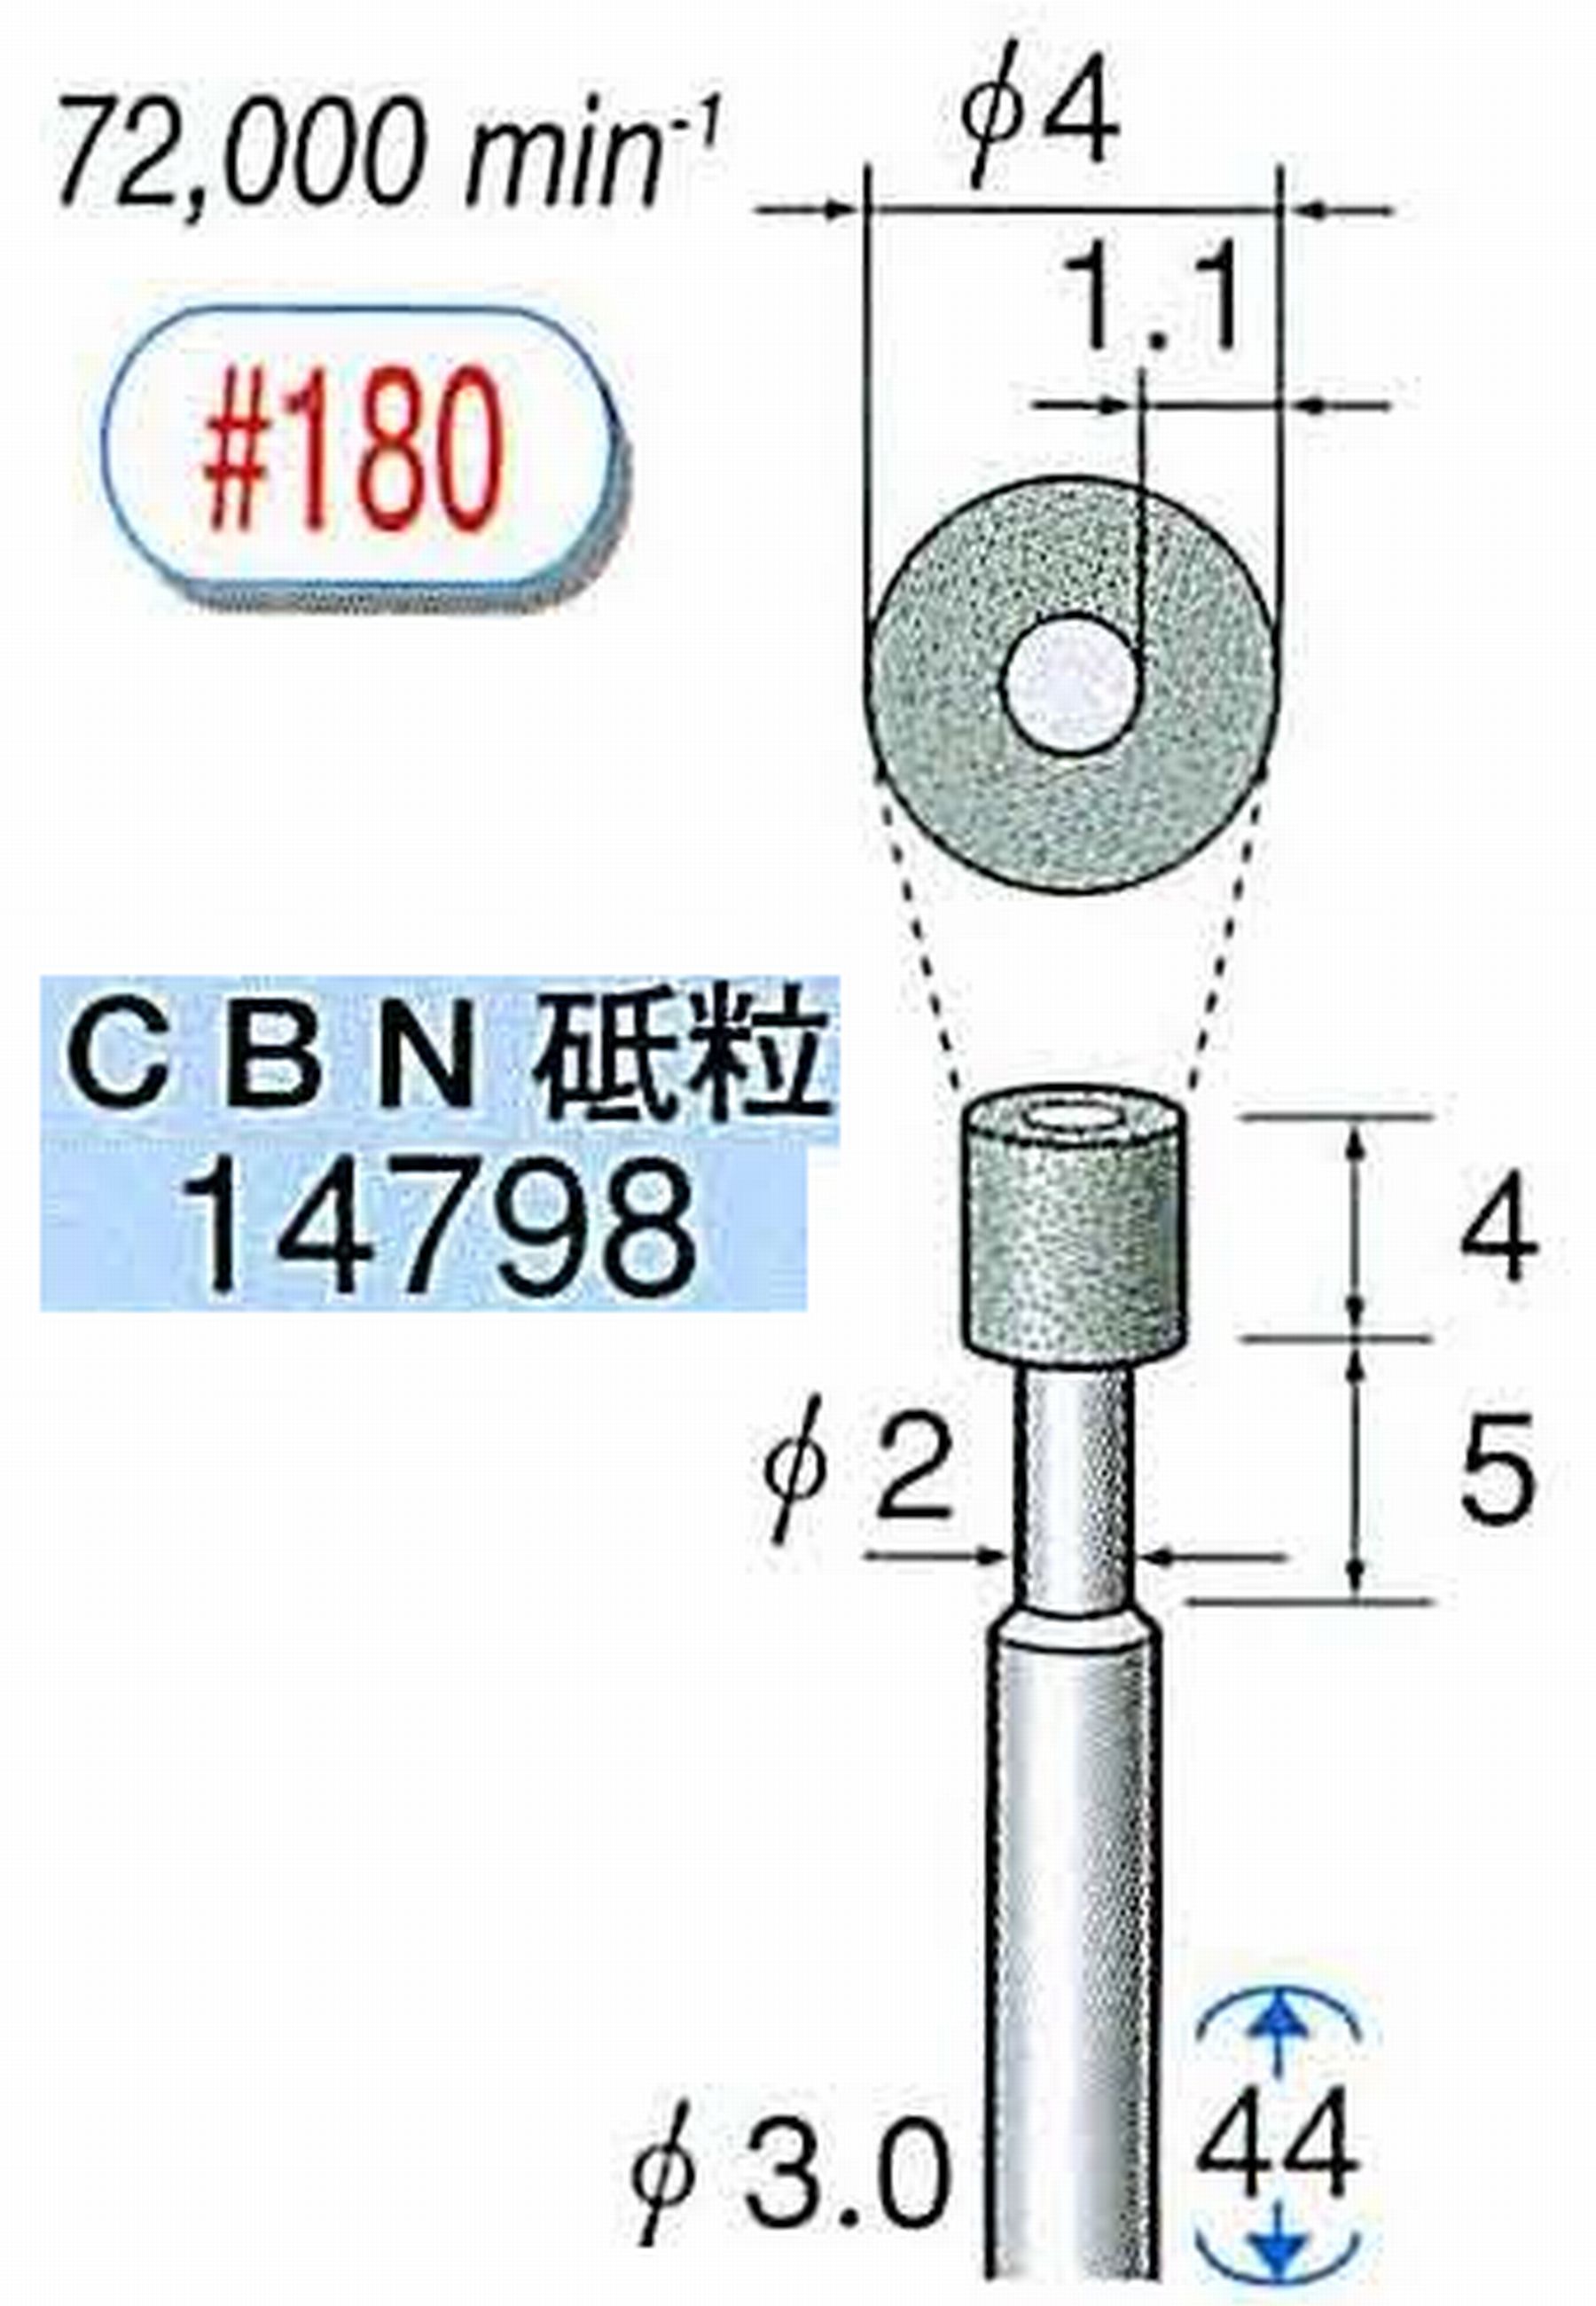 ナカニシ/NAKANISHI ビトリファイドダイヤモンド砥石 CBN砥粒 軸径(シャンク)φ3.0mm 14798